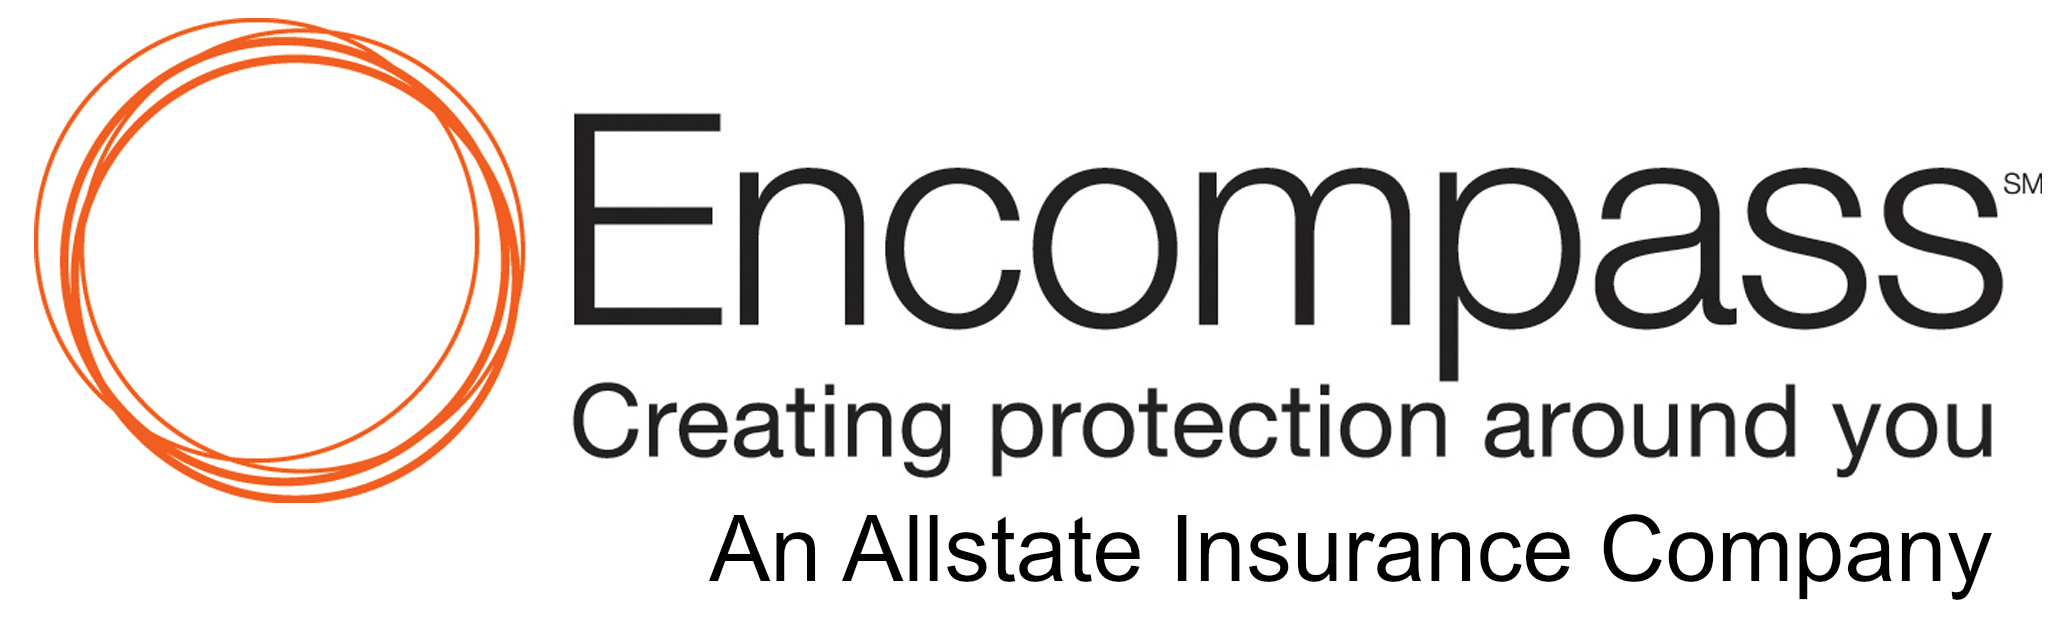 Encompass Logo - Encompass Insurance